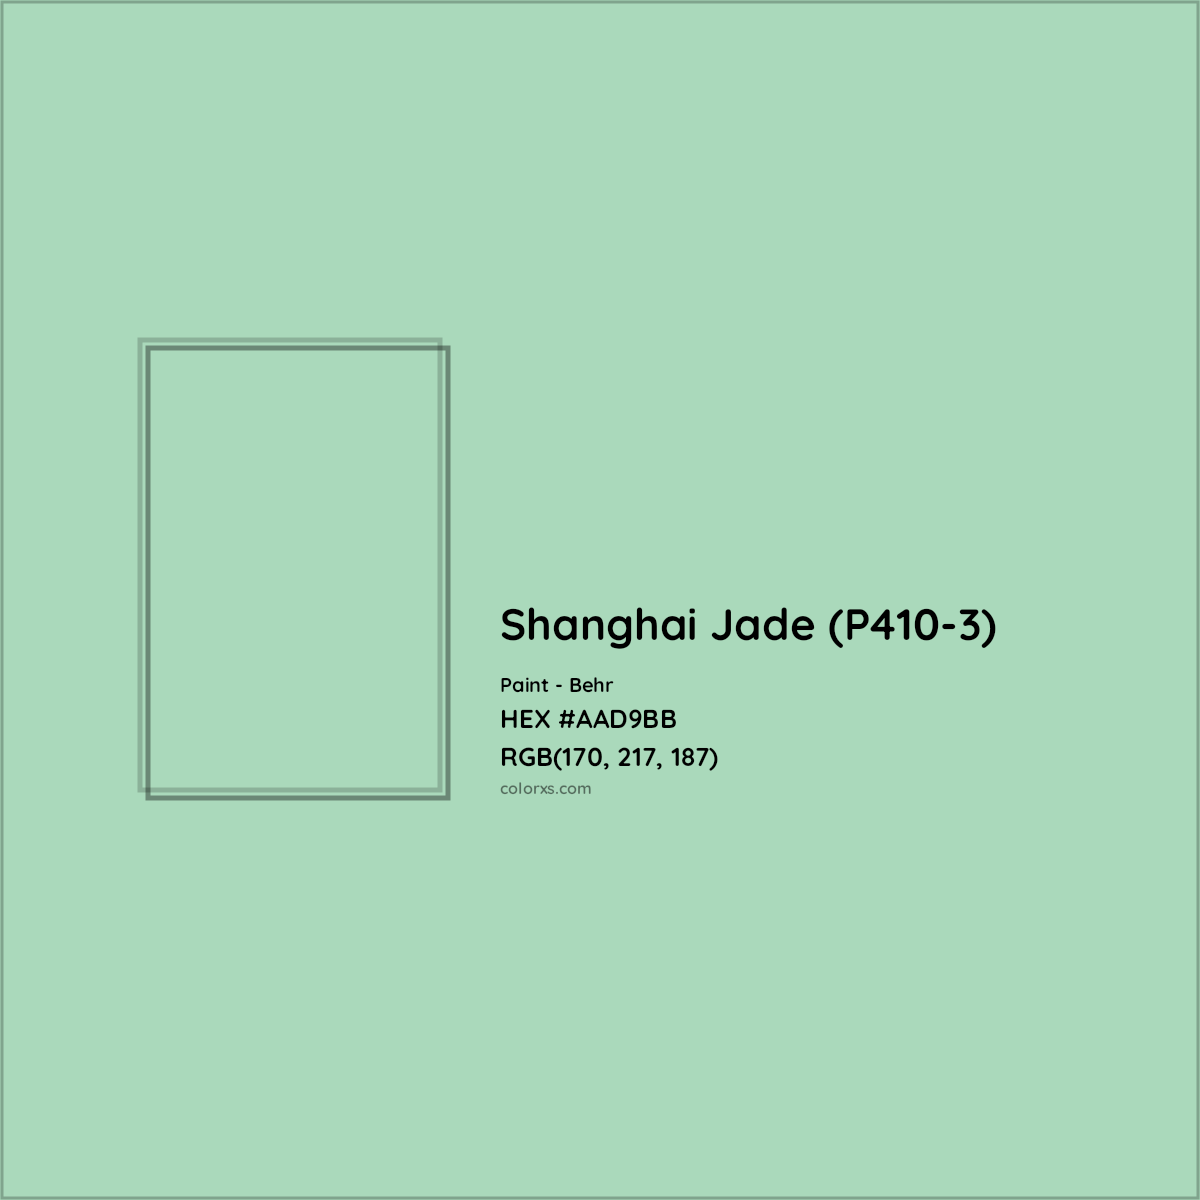 HEX #AAD9BB Shanghai Jade (P410-3) Paint Behr - Color Code